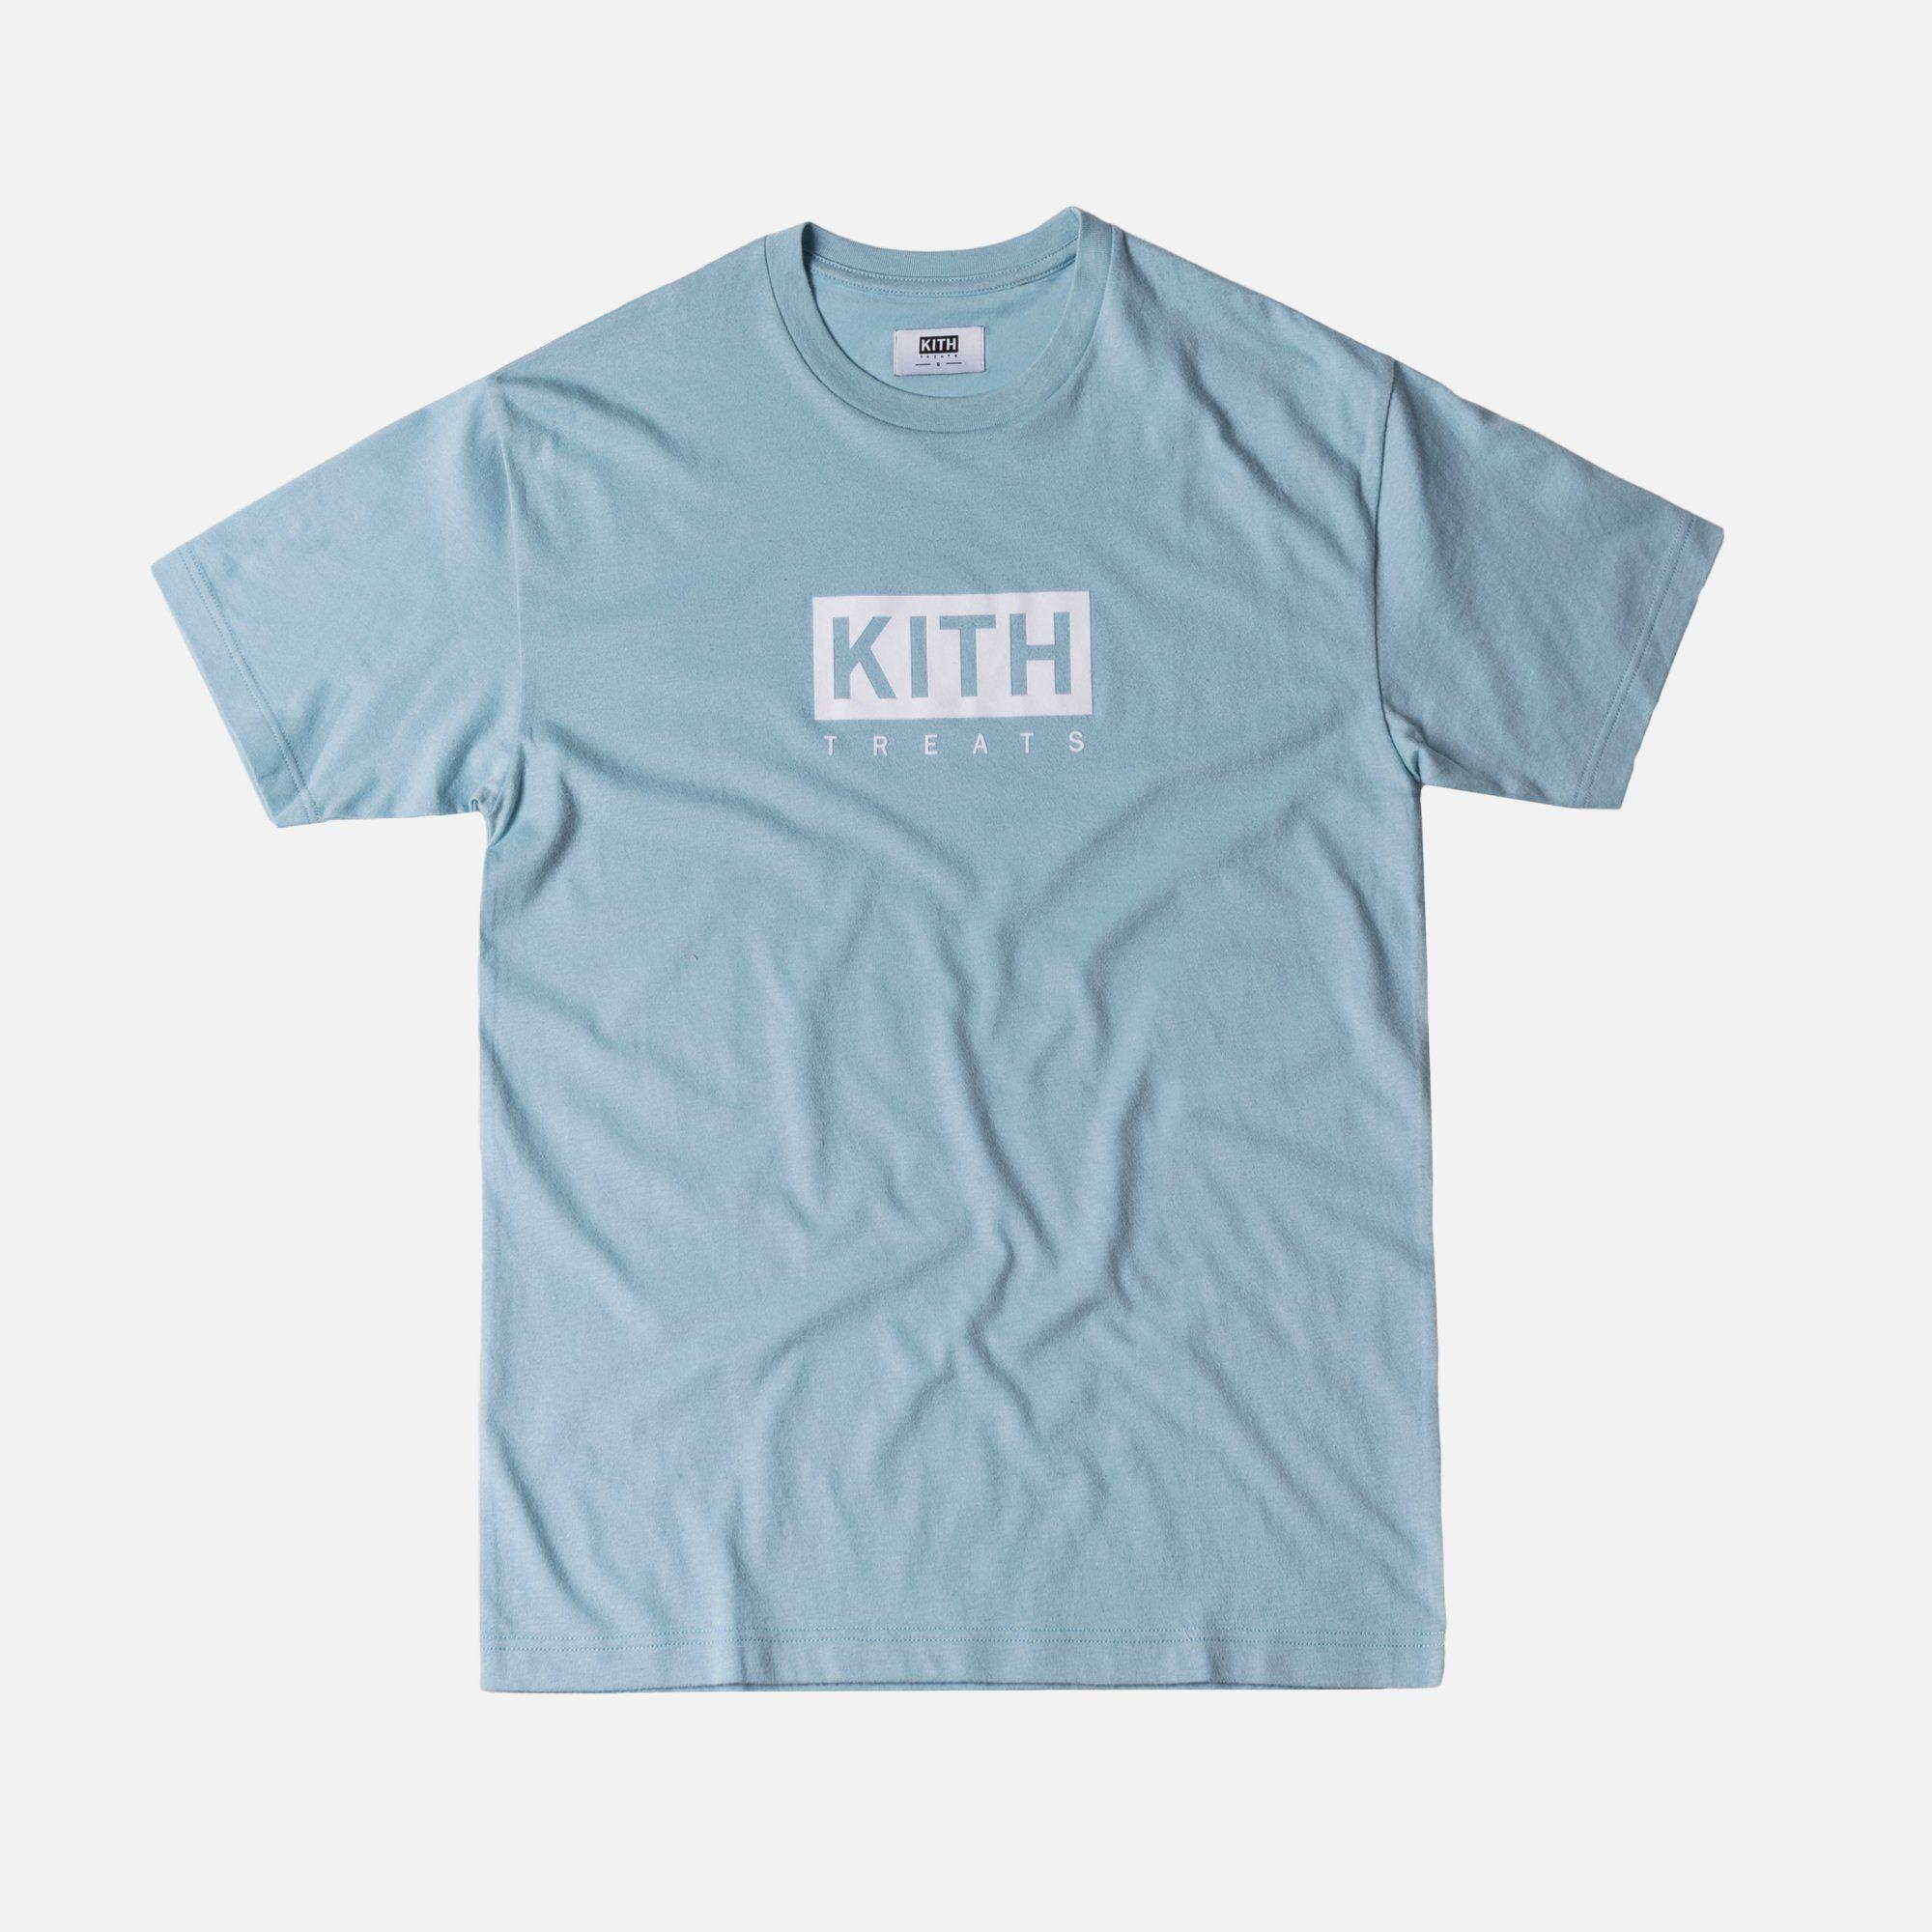 Kith Blue Logo - Kith Treats Tee - Light Blue